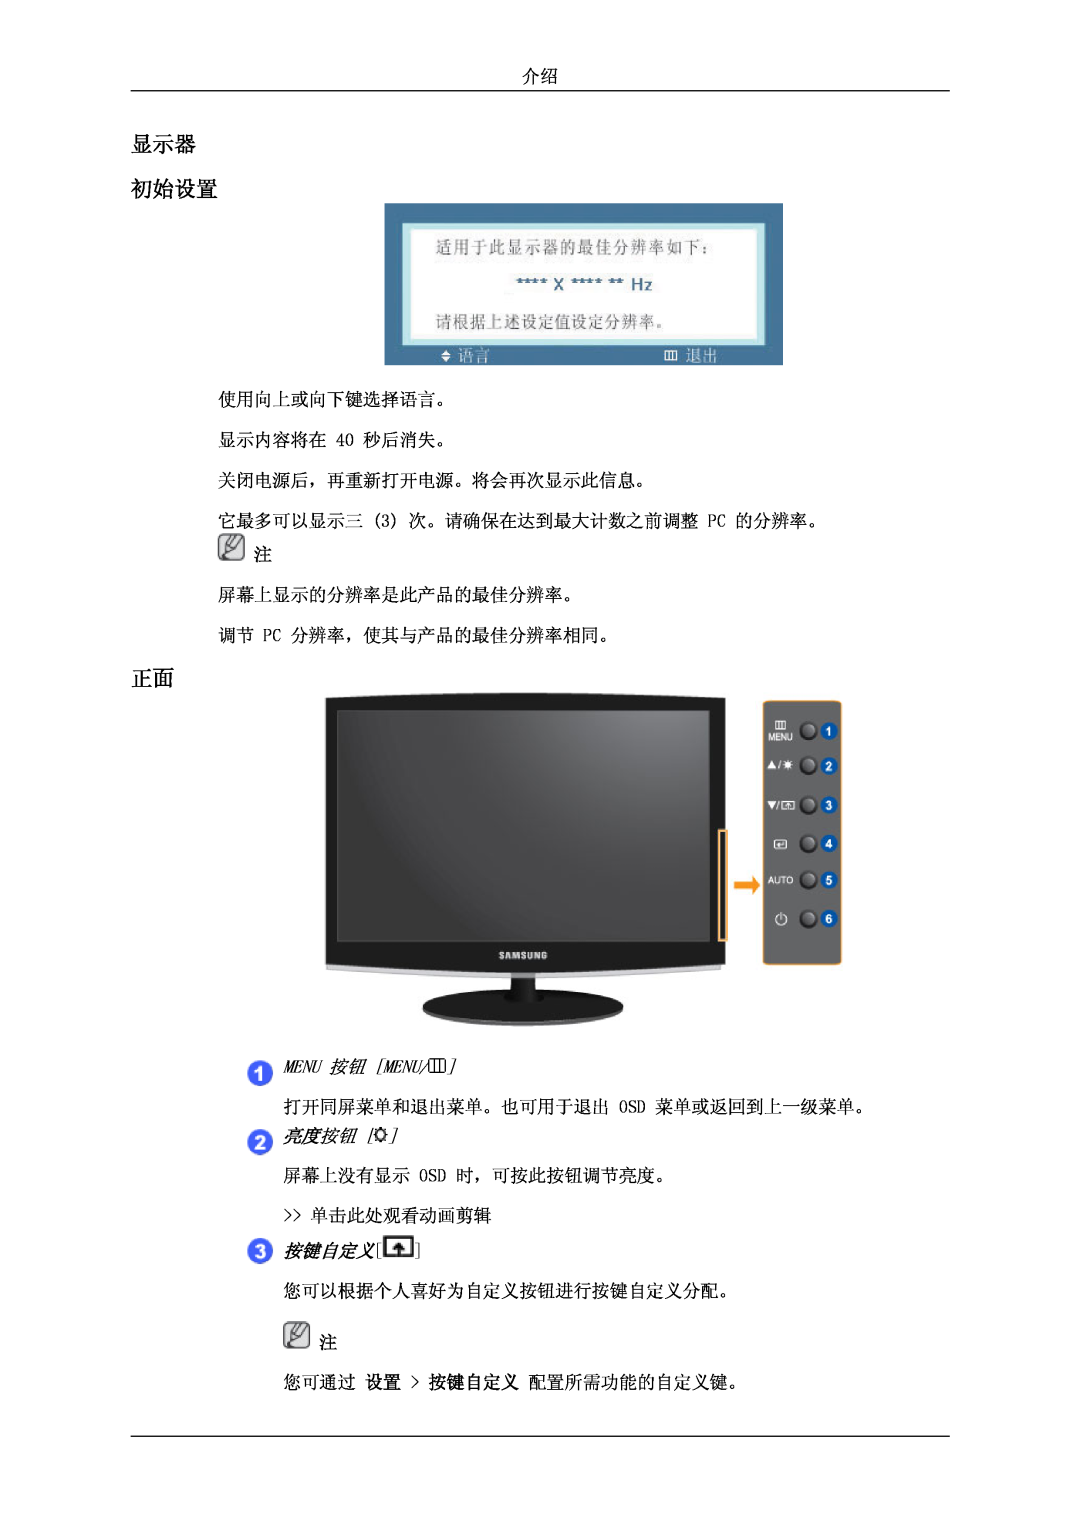 Samsung LS24CMKKFVA/EN, LS24CMKKFV/EN manual 显示器 初始设置, Menu 按钮 Menu, 亮度按钮, 按键自定义 